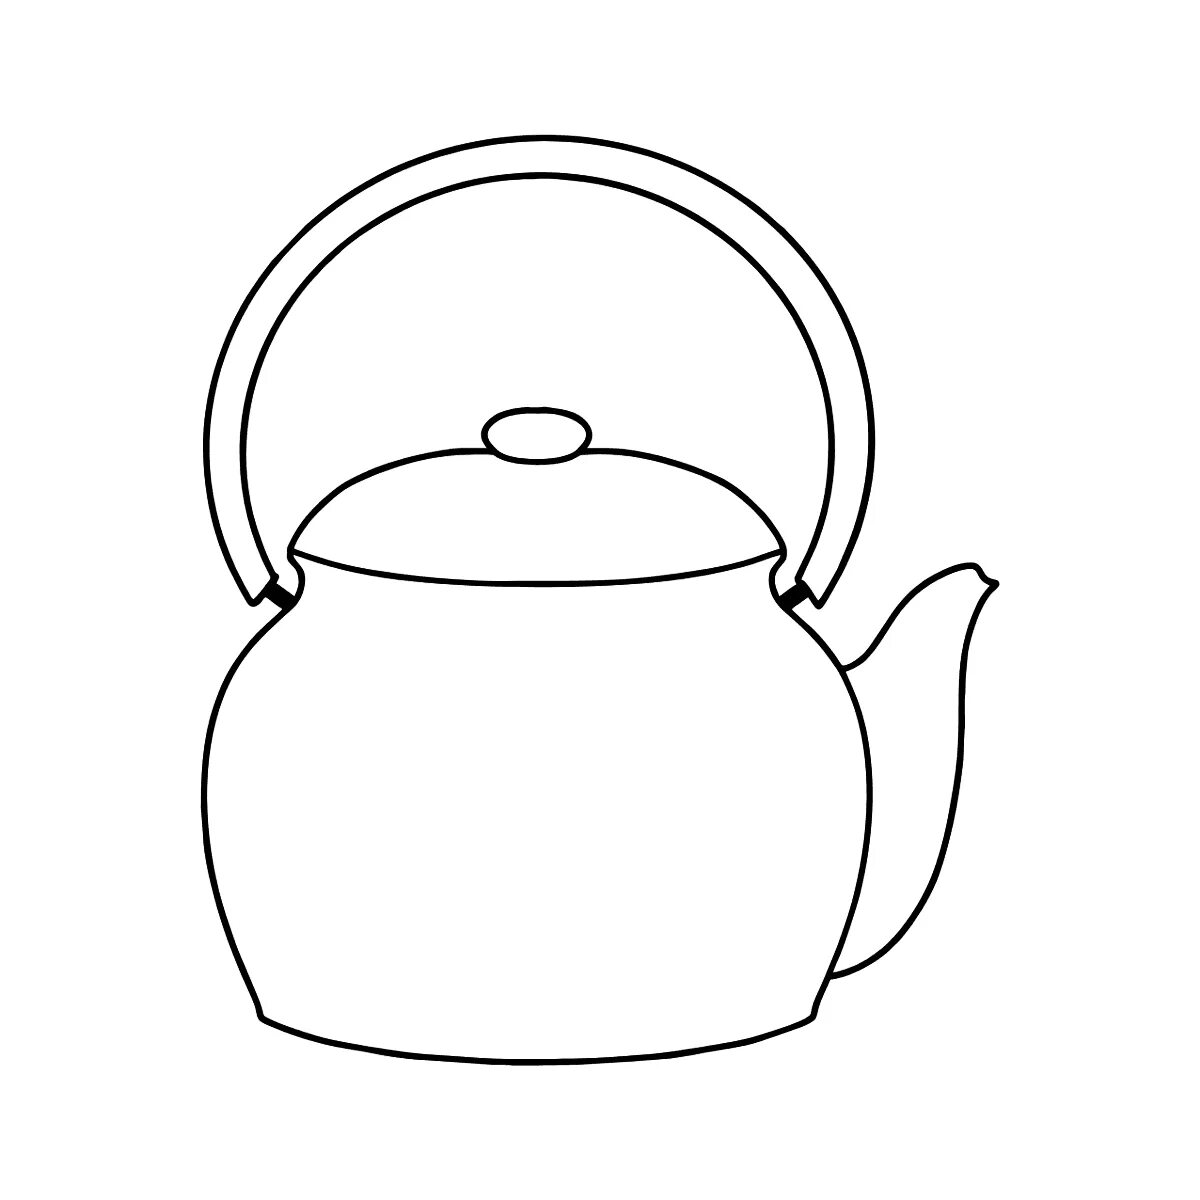 Раскраска гламурный чайник для детей 2-3 лет